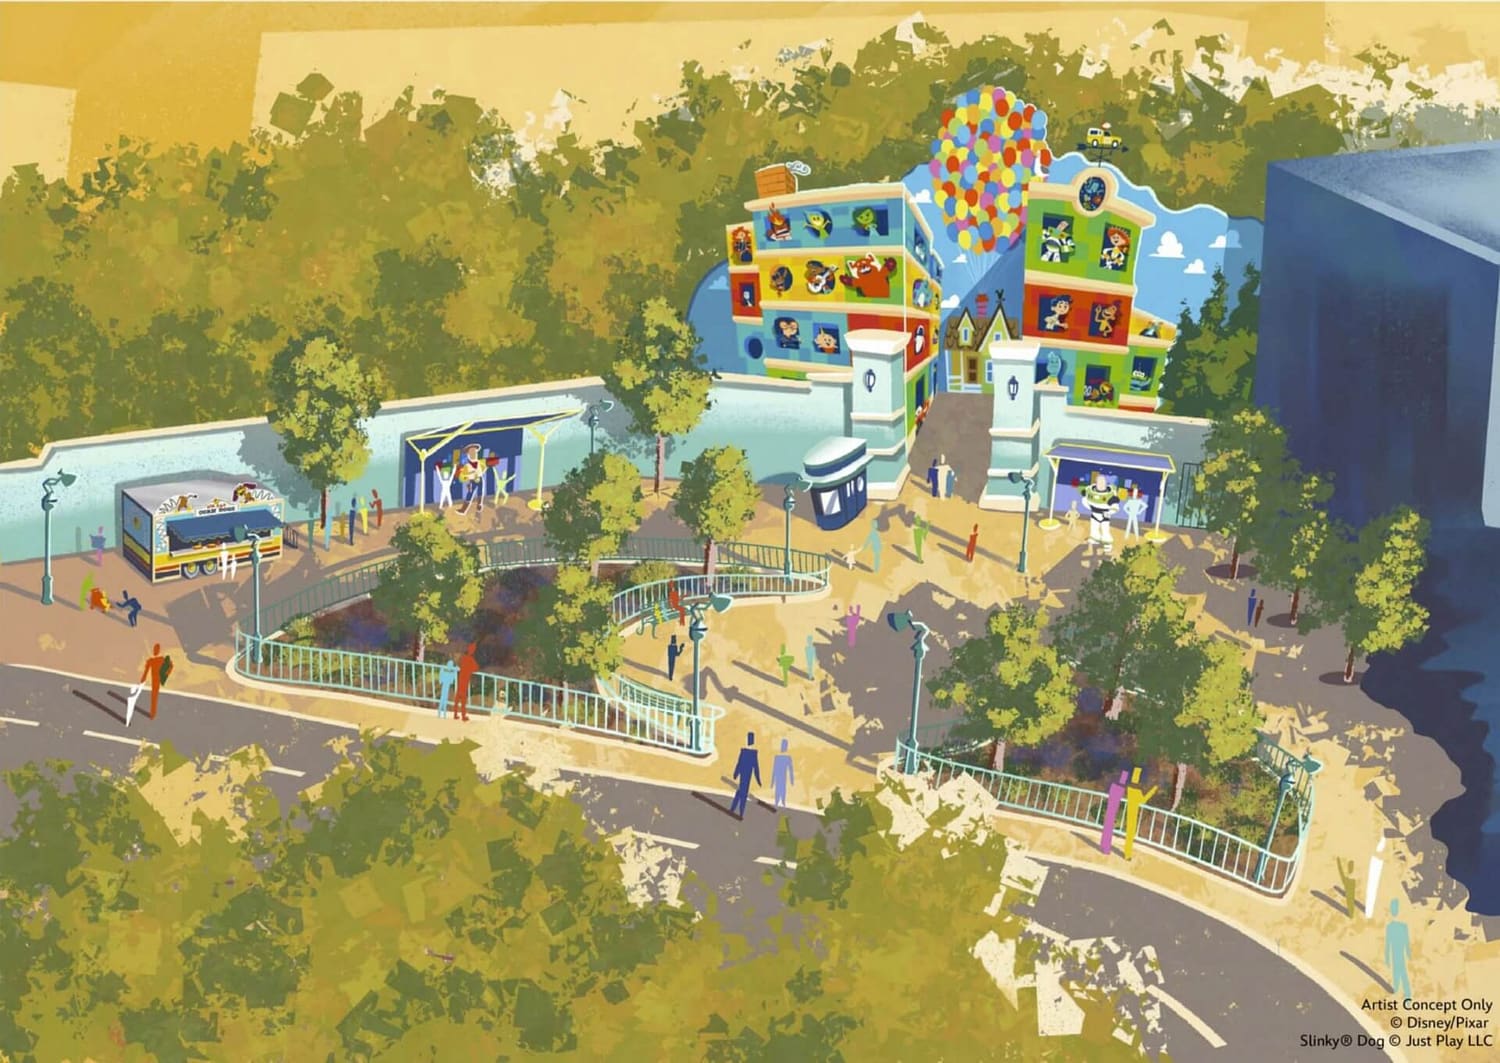 Thématisation des lieux des parcs avec des films Disney/Pixar